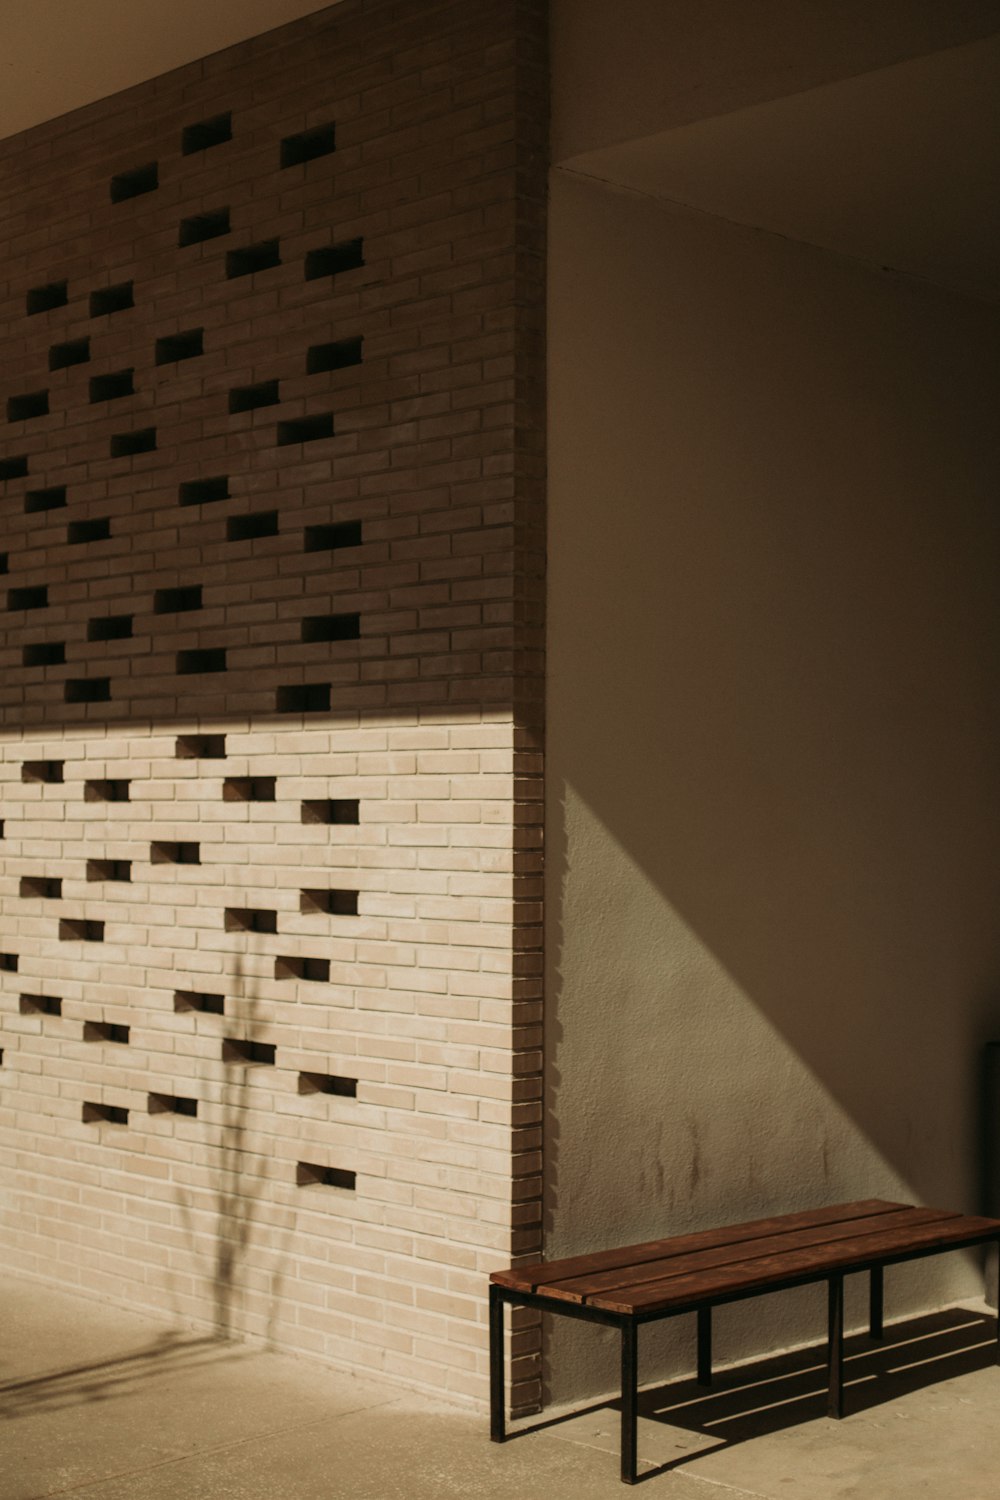 Un banco sentado frente a una pared de ladrillos